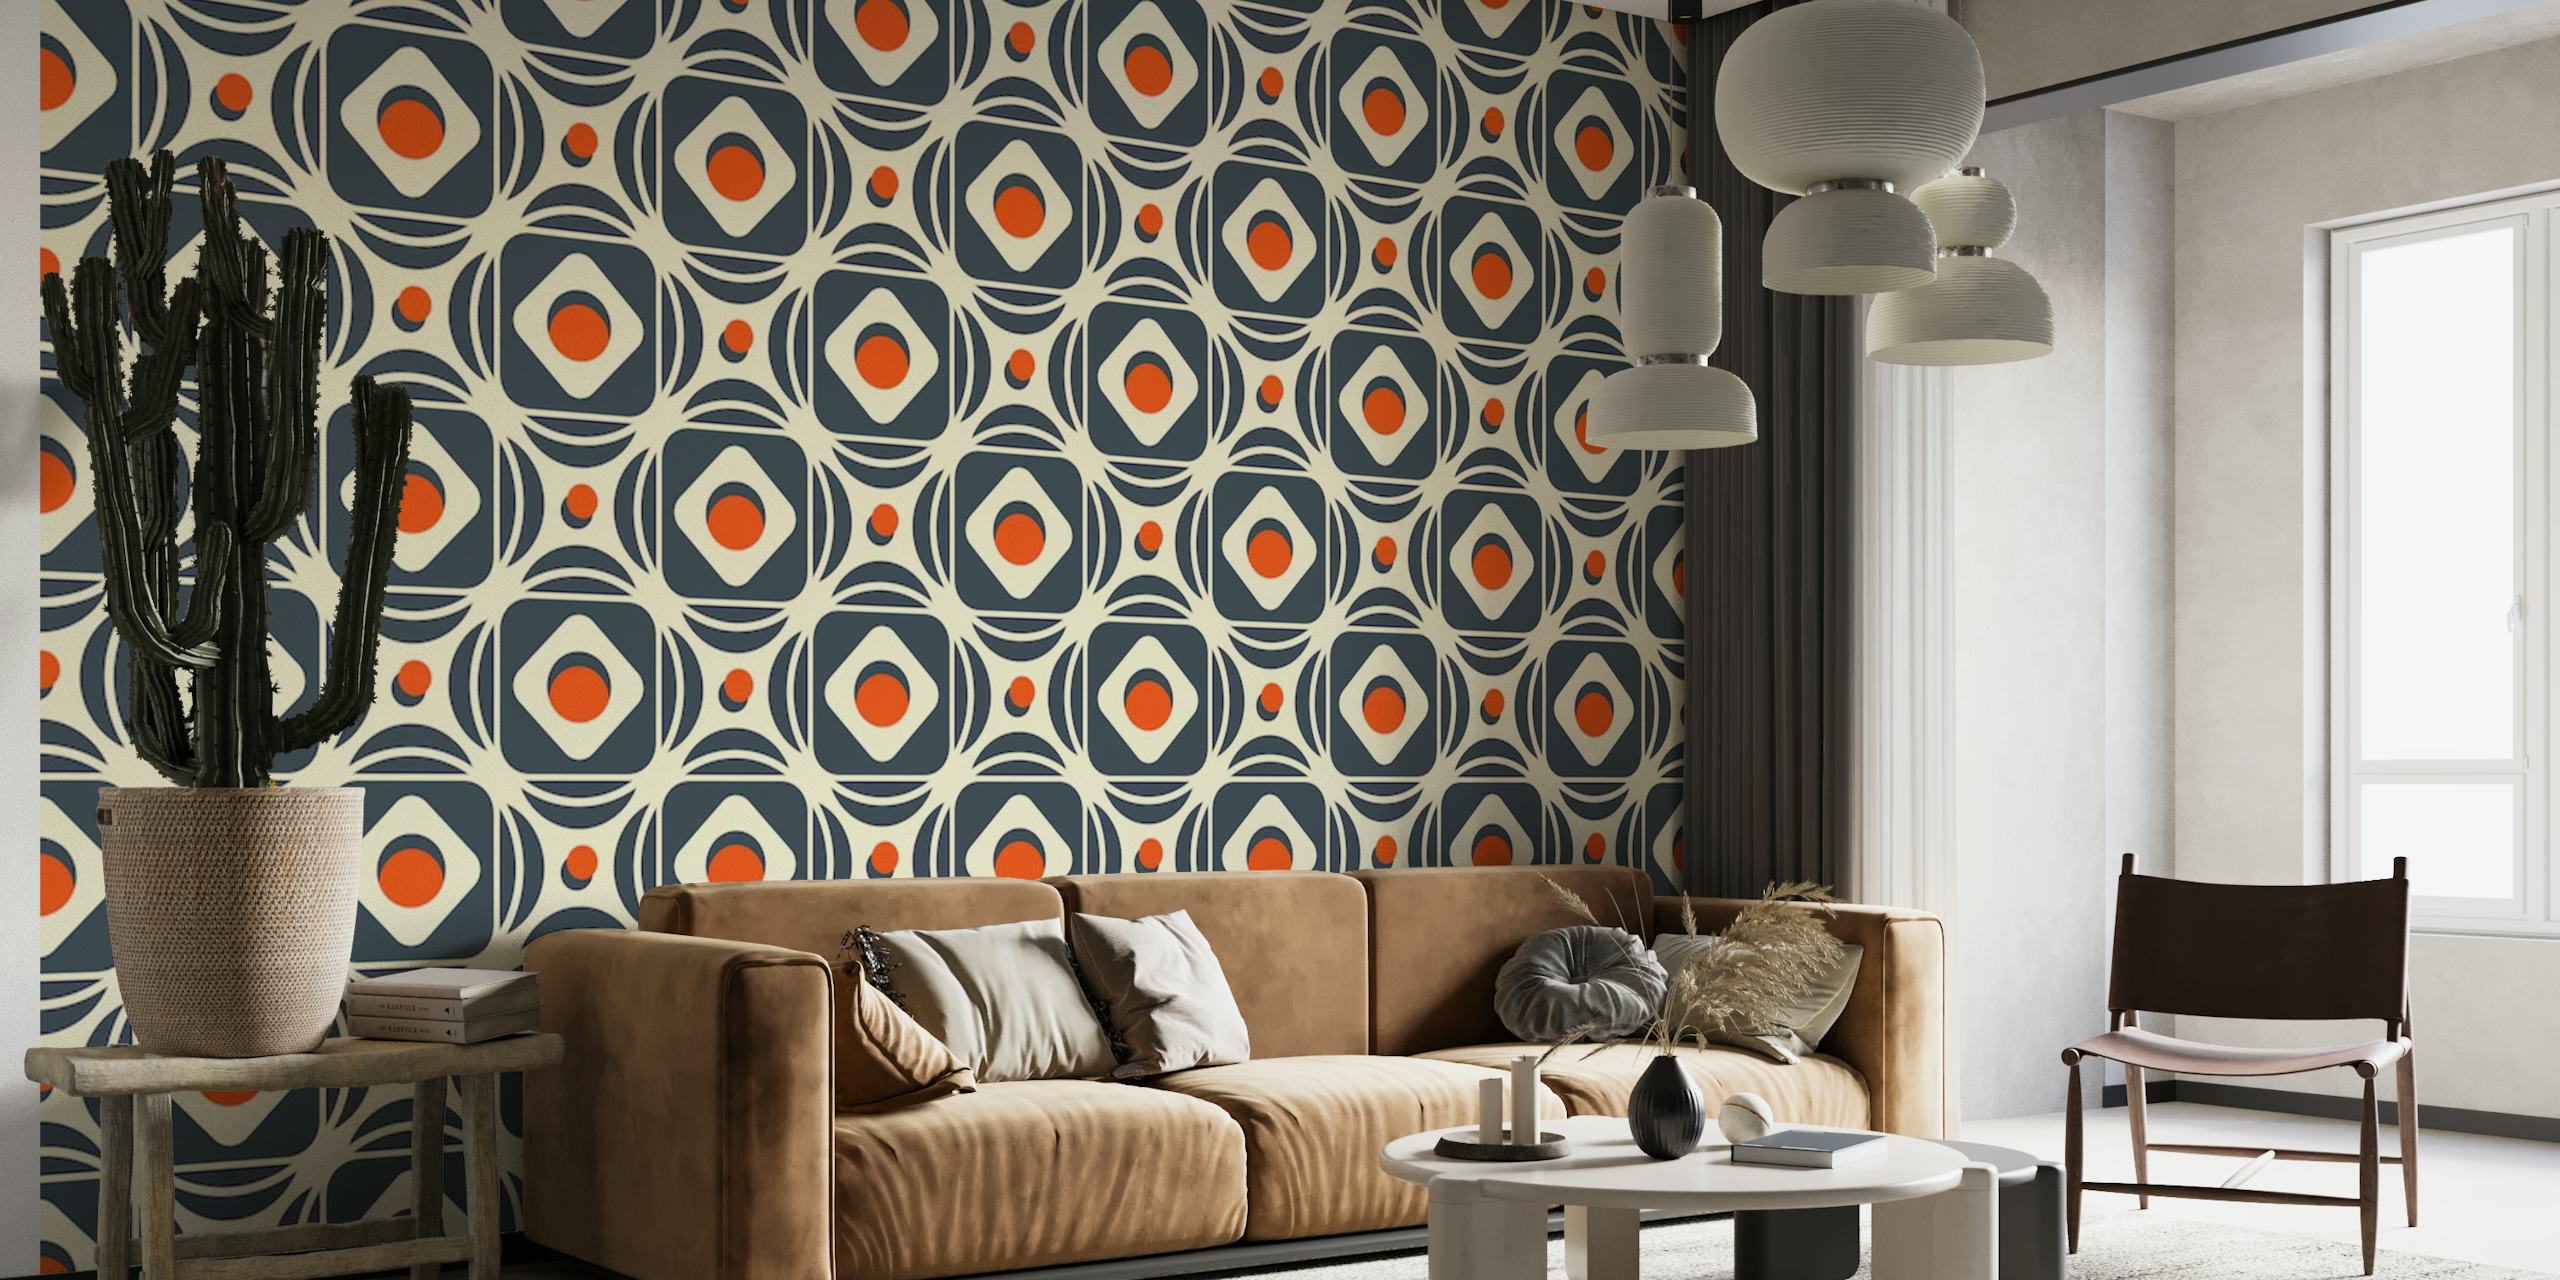 2184 Mural de pared geométrico abstracto con un patrón complejo de formas y colores contrastantes